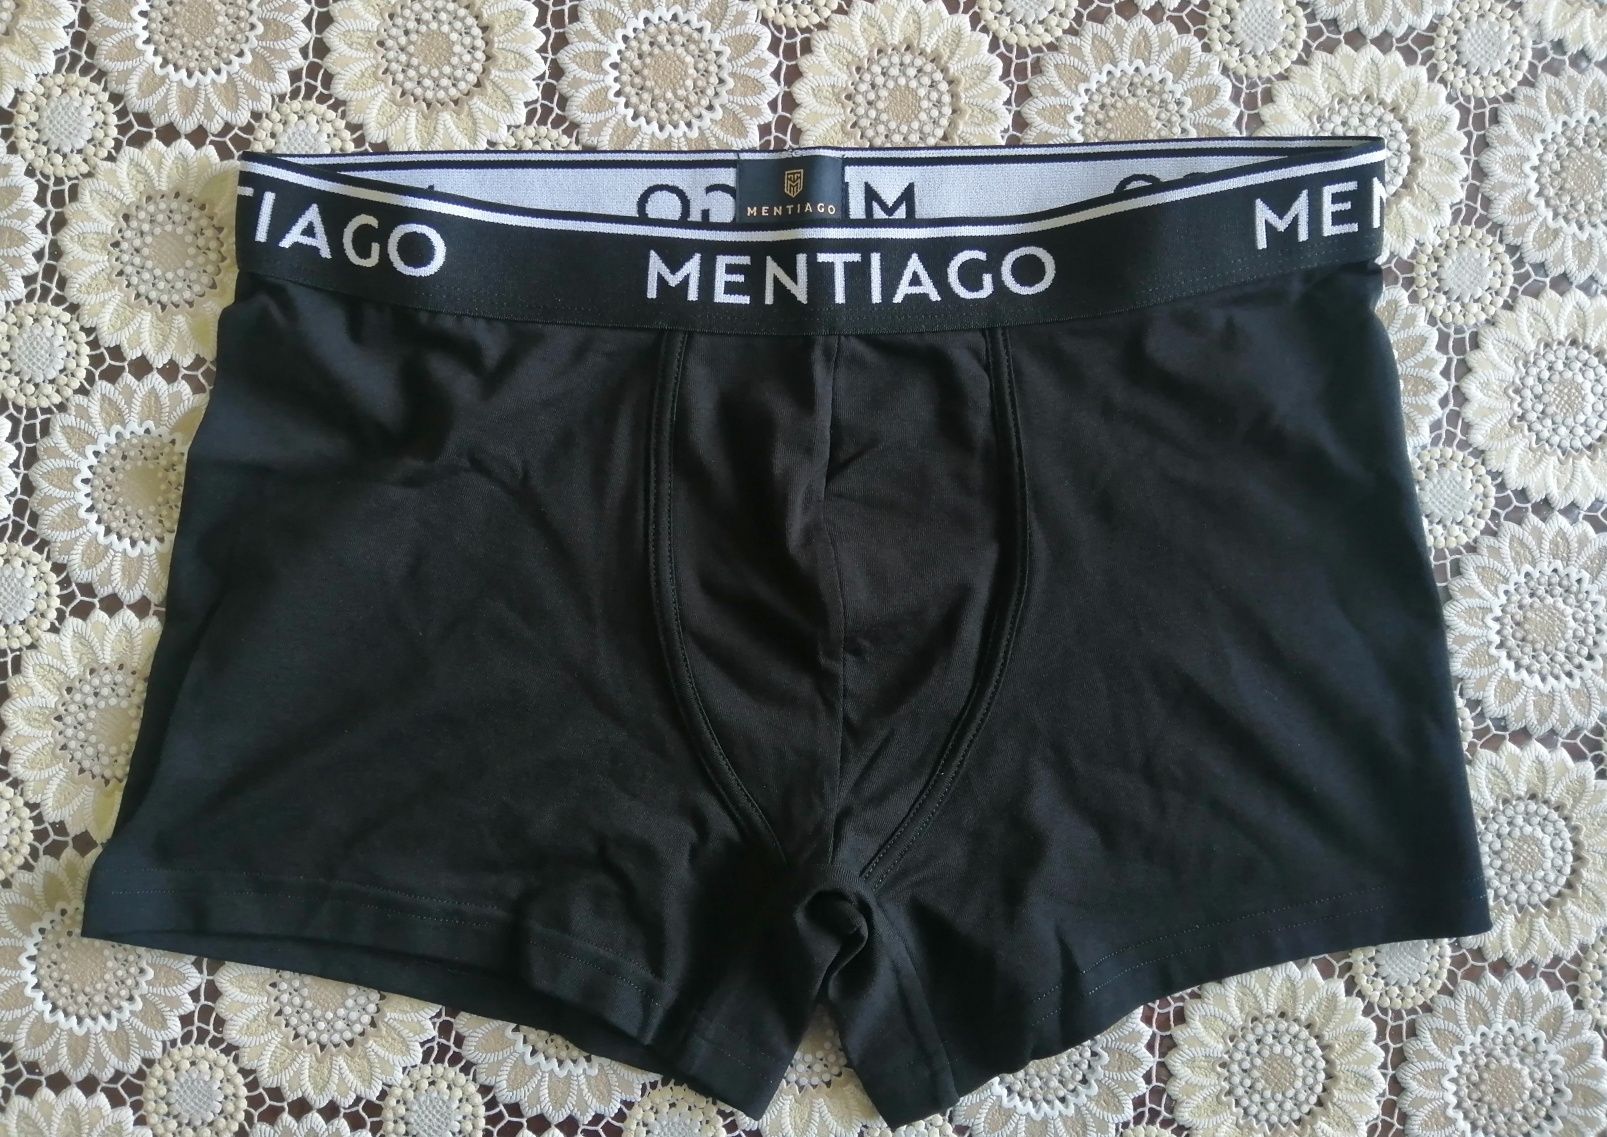 Луксозни  мъжки боксерки  на германска марка Mentiago
S M L XL XXL